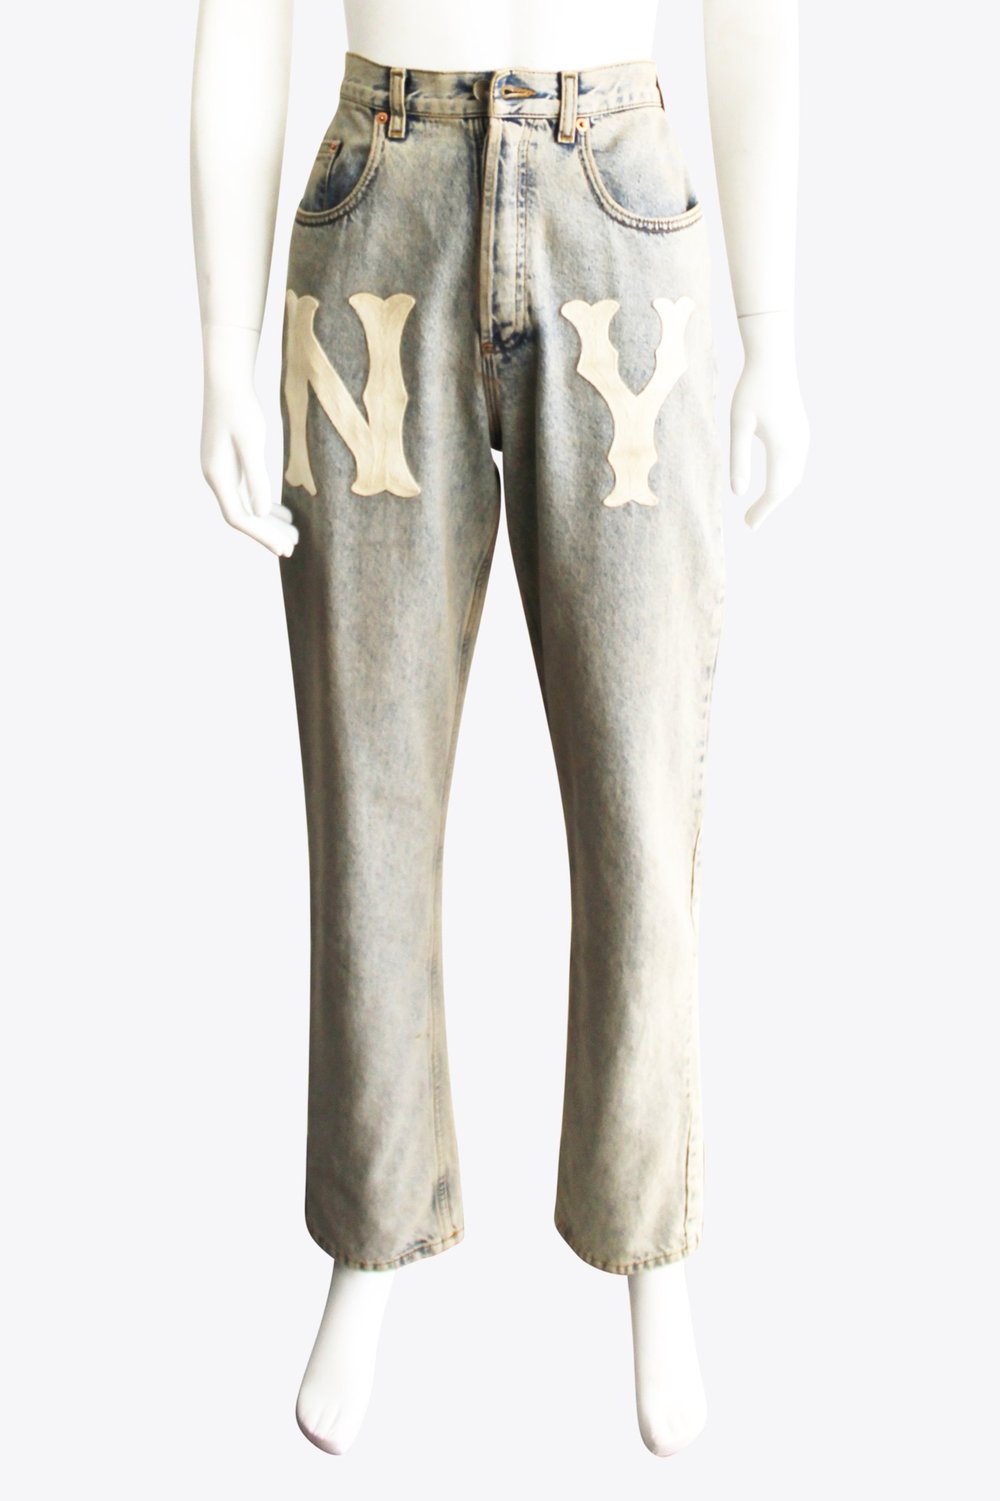 Gucci "NY" Jeans